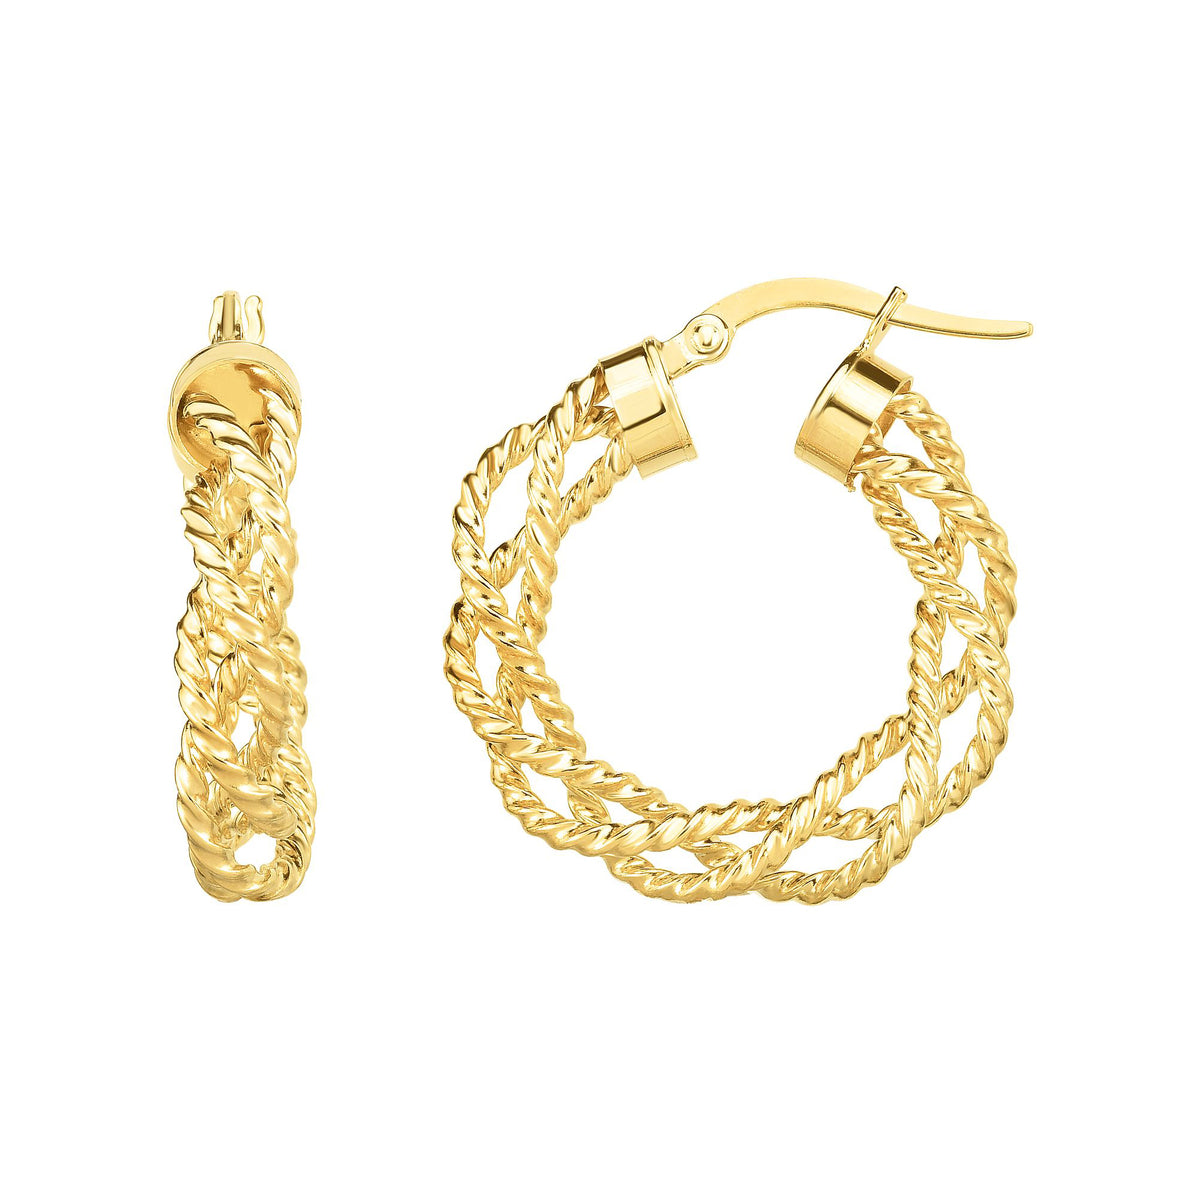 14K Gold Twisted Hoop Earring, Diameter 22mm